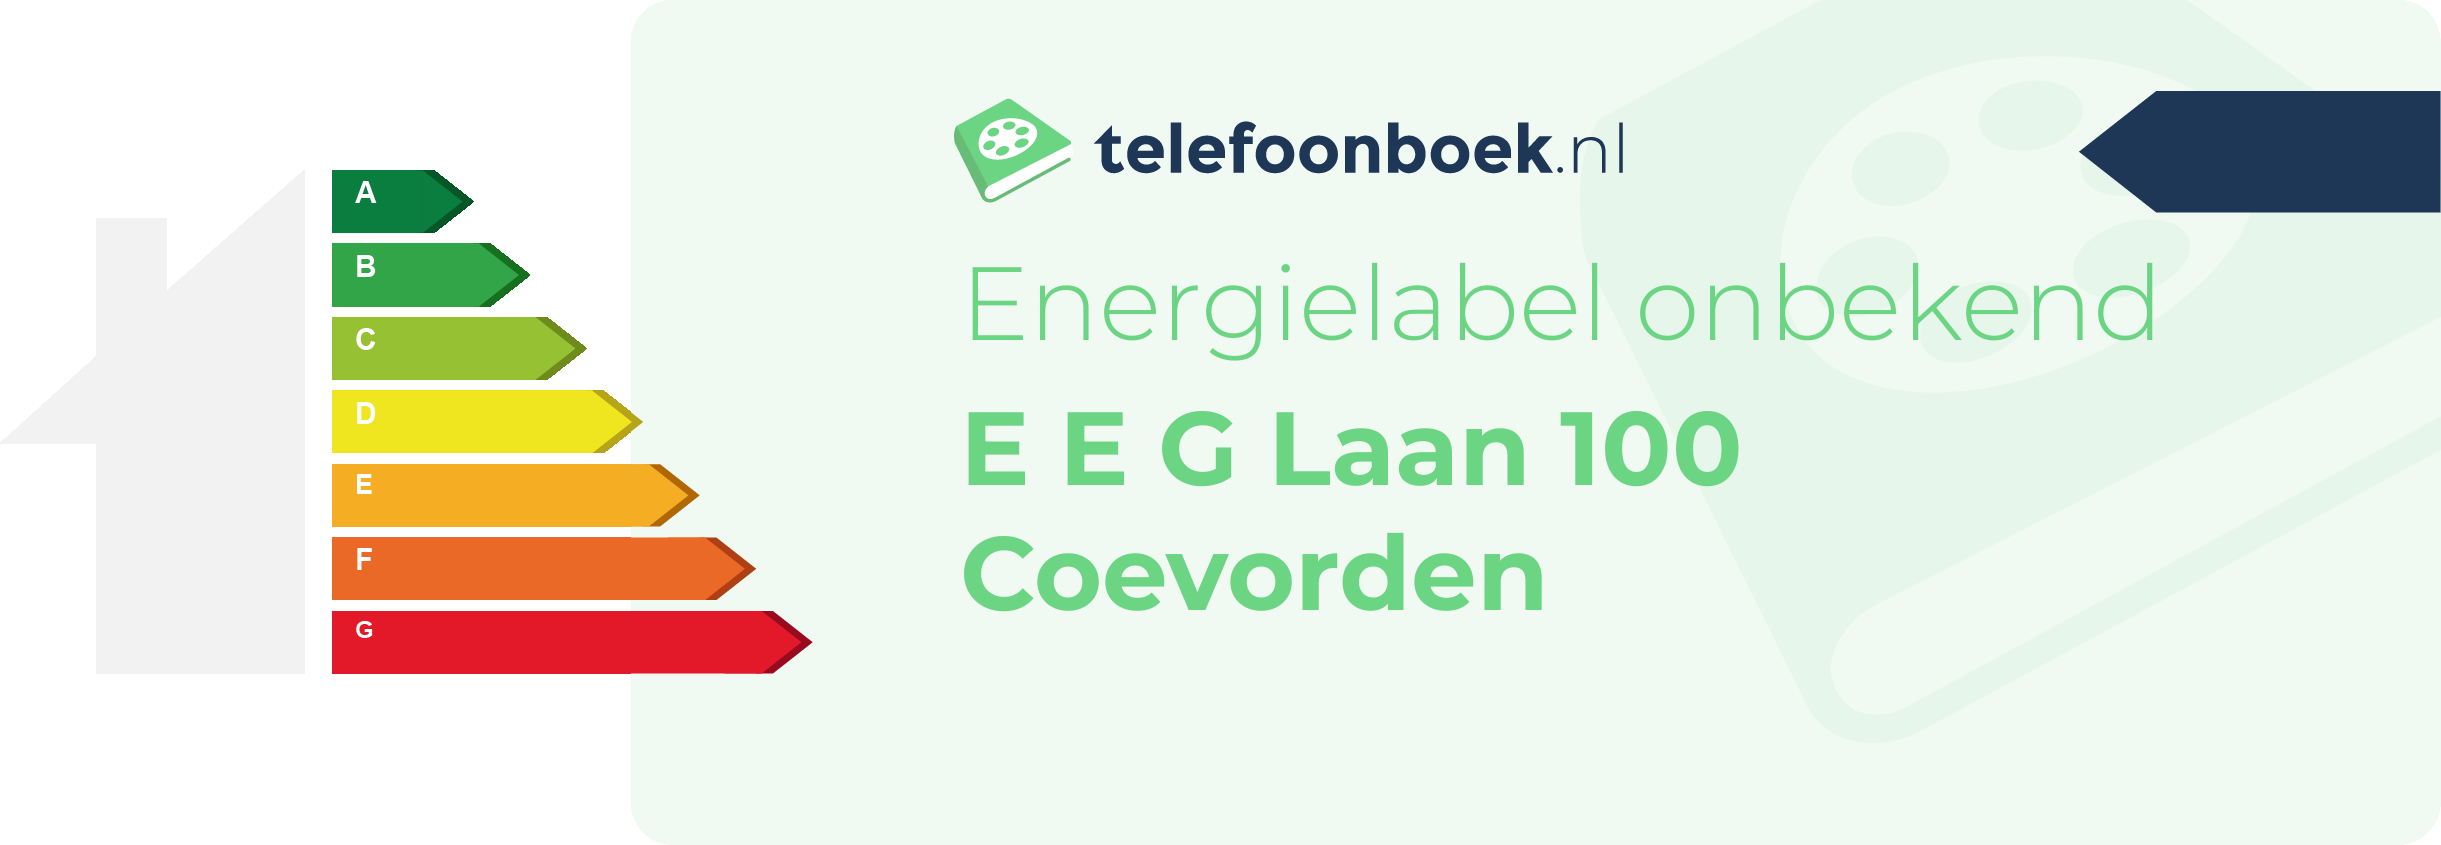 Energielabel E E G Laan 100 Coevorden